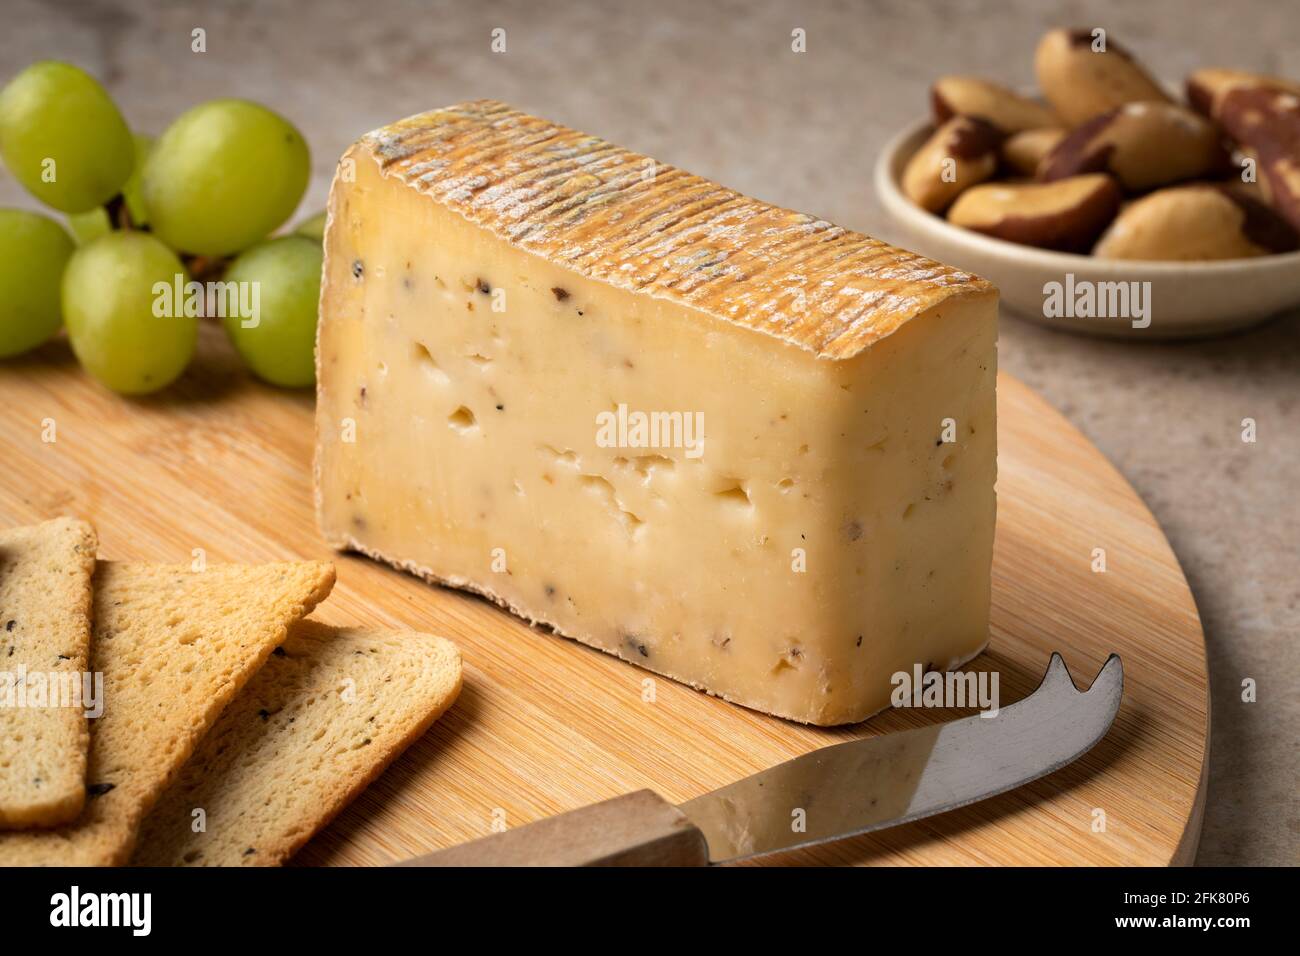 Tagliere con formaggio Taleggio Tartufo italiano primo piano come uno spuntino o un antipasto Foto Stock